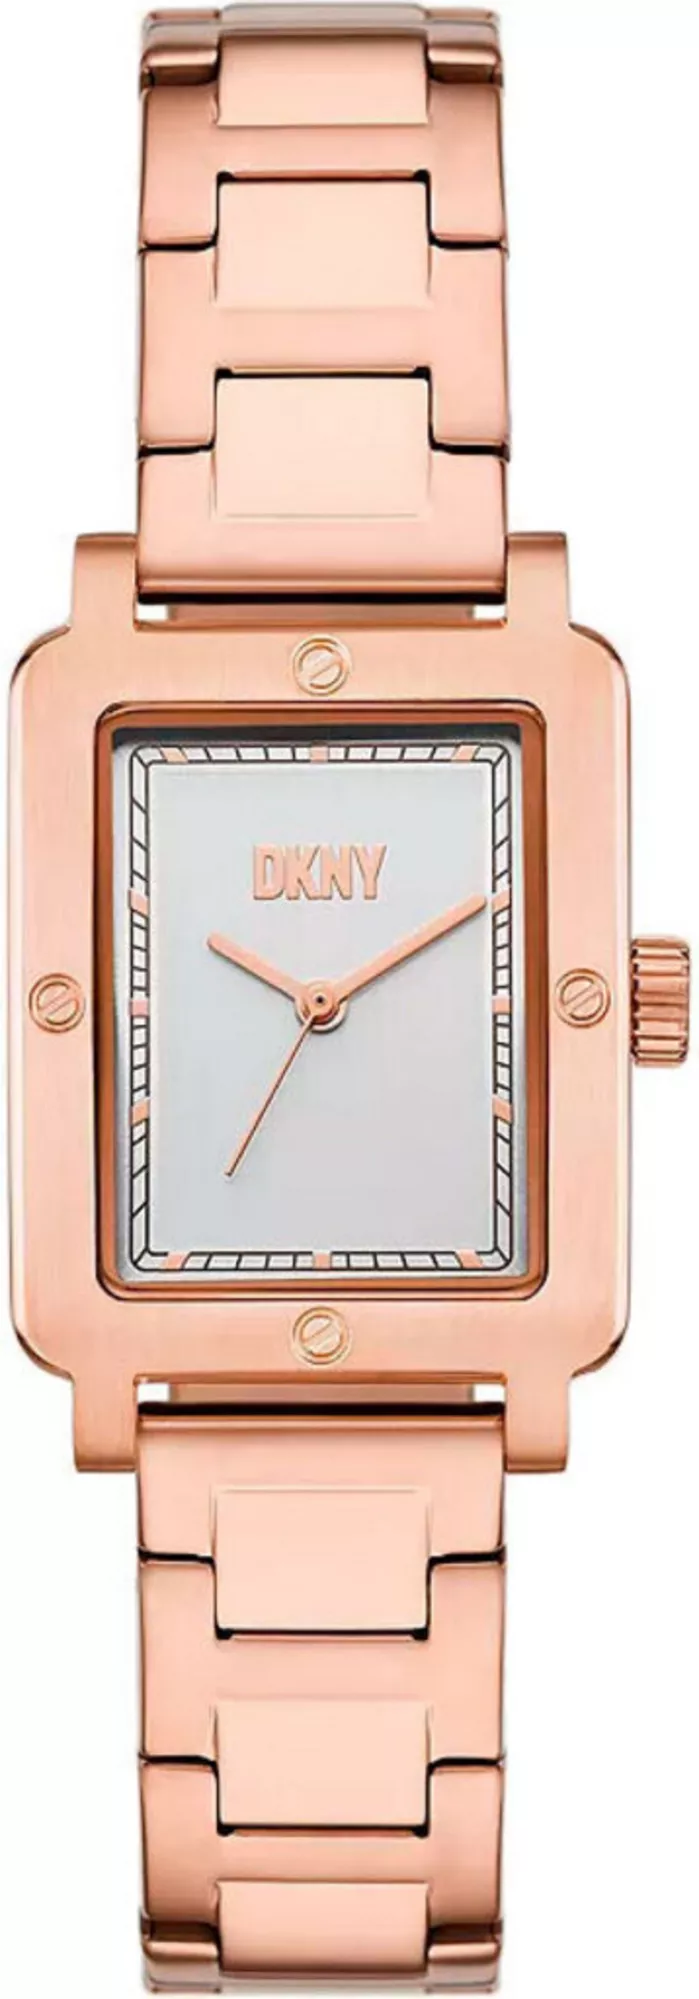 Часы DKNY NY6663